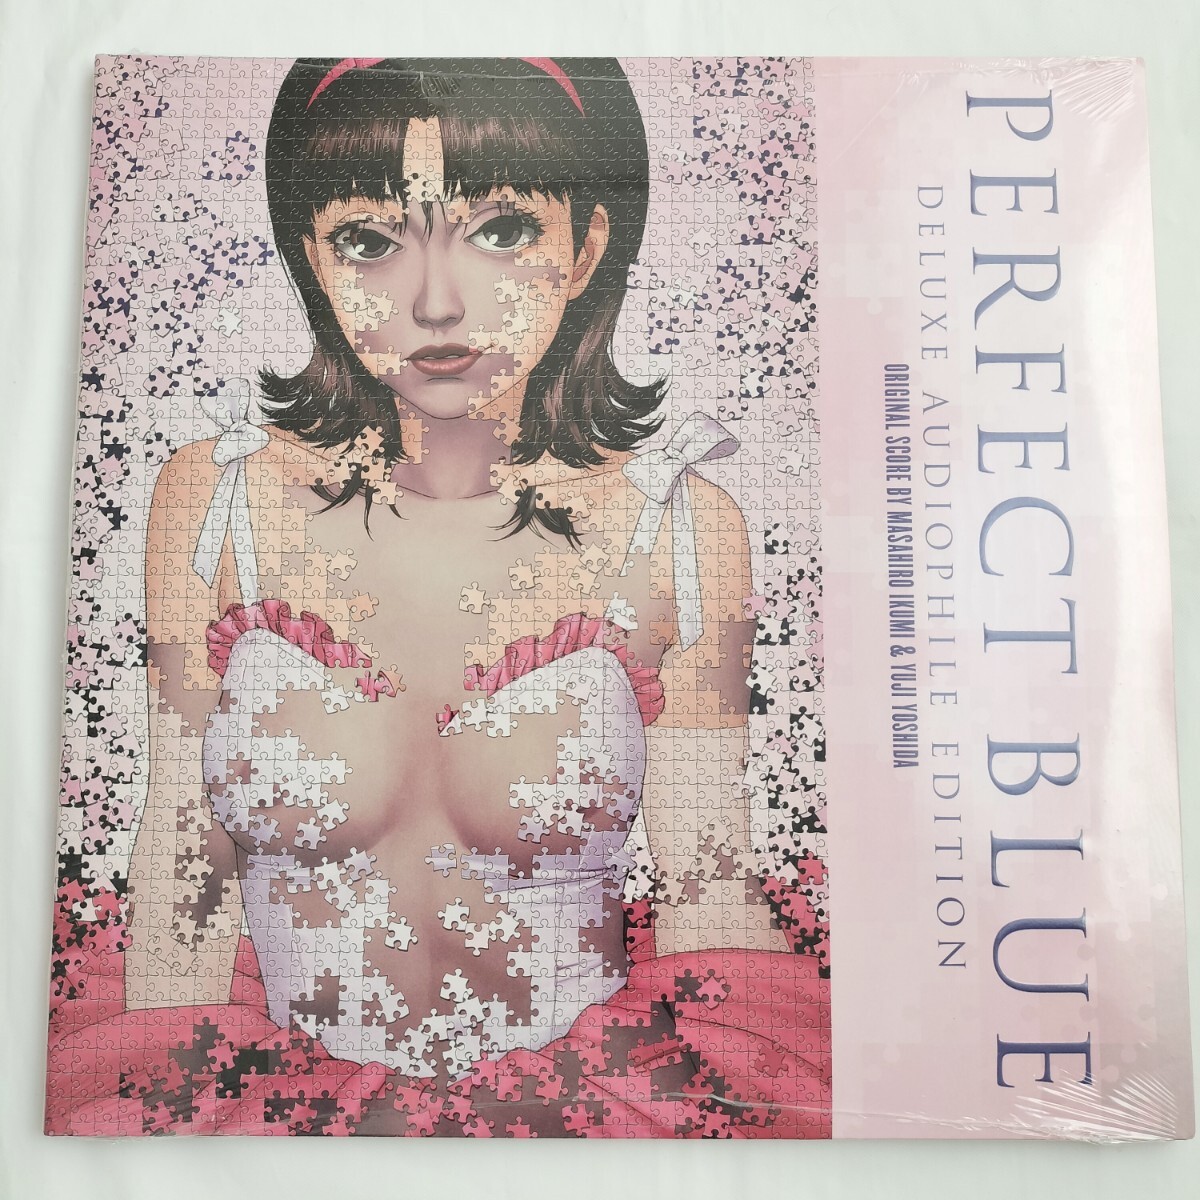 【新品】PERFECT BLUE アナログレコード サウンドトラック アナログ盤 パーフェクトブルー LP 限定盤 今敏_画像1